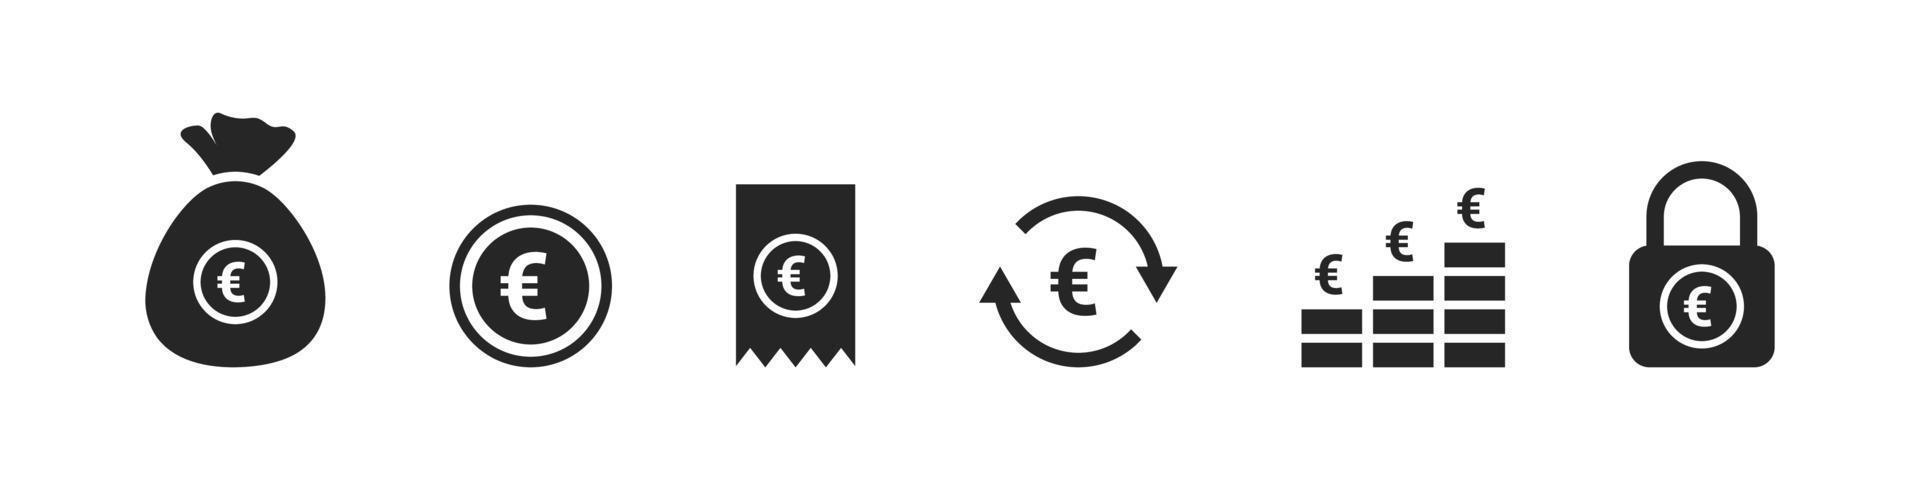 valuta pictogrammen. euro pictogrammen. geld tekens. financieel vector pictogrammen. vector illustratie